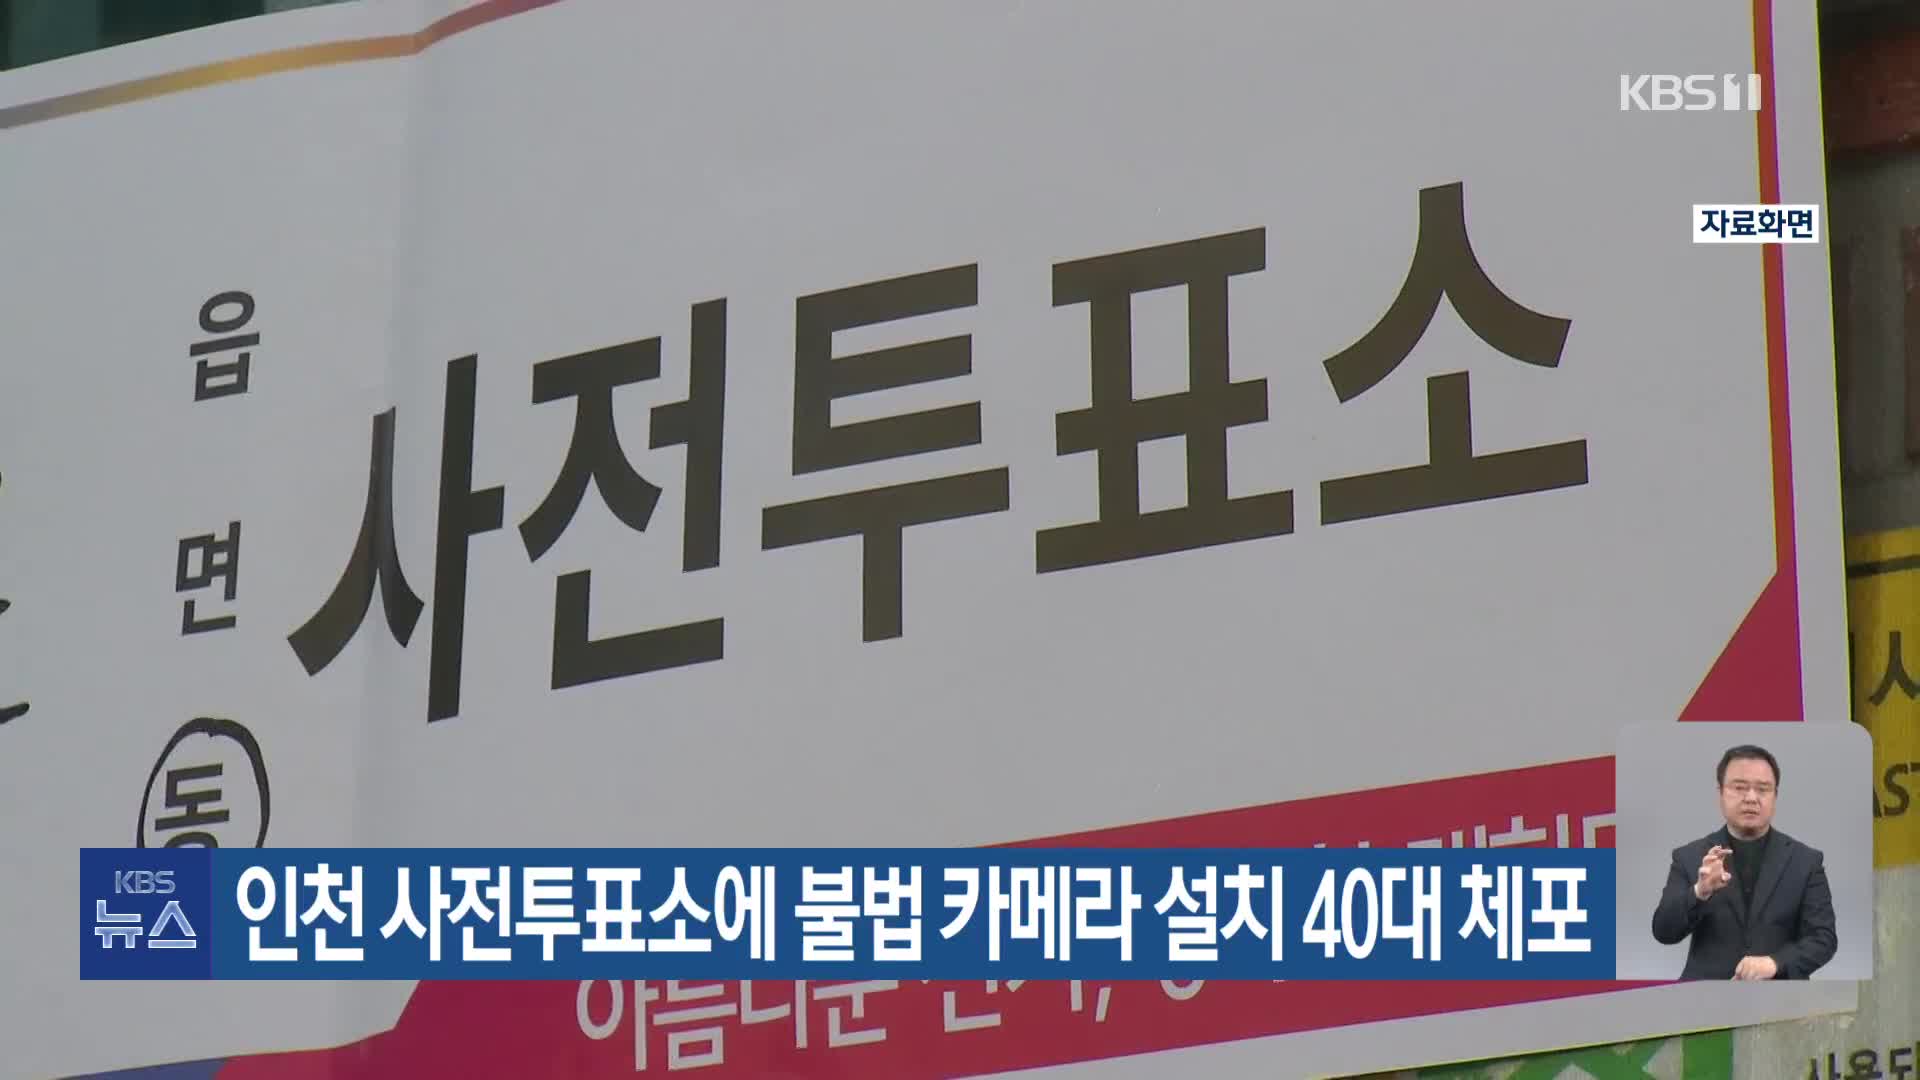 인천 사전투표소에 불법 카메라 설치 40대 체포